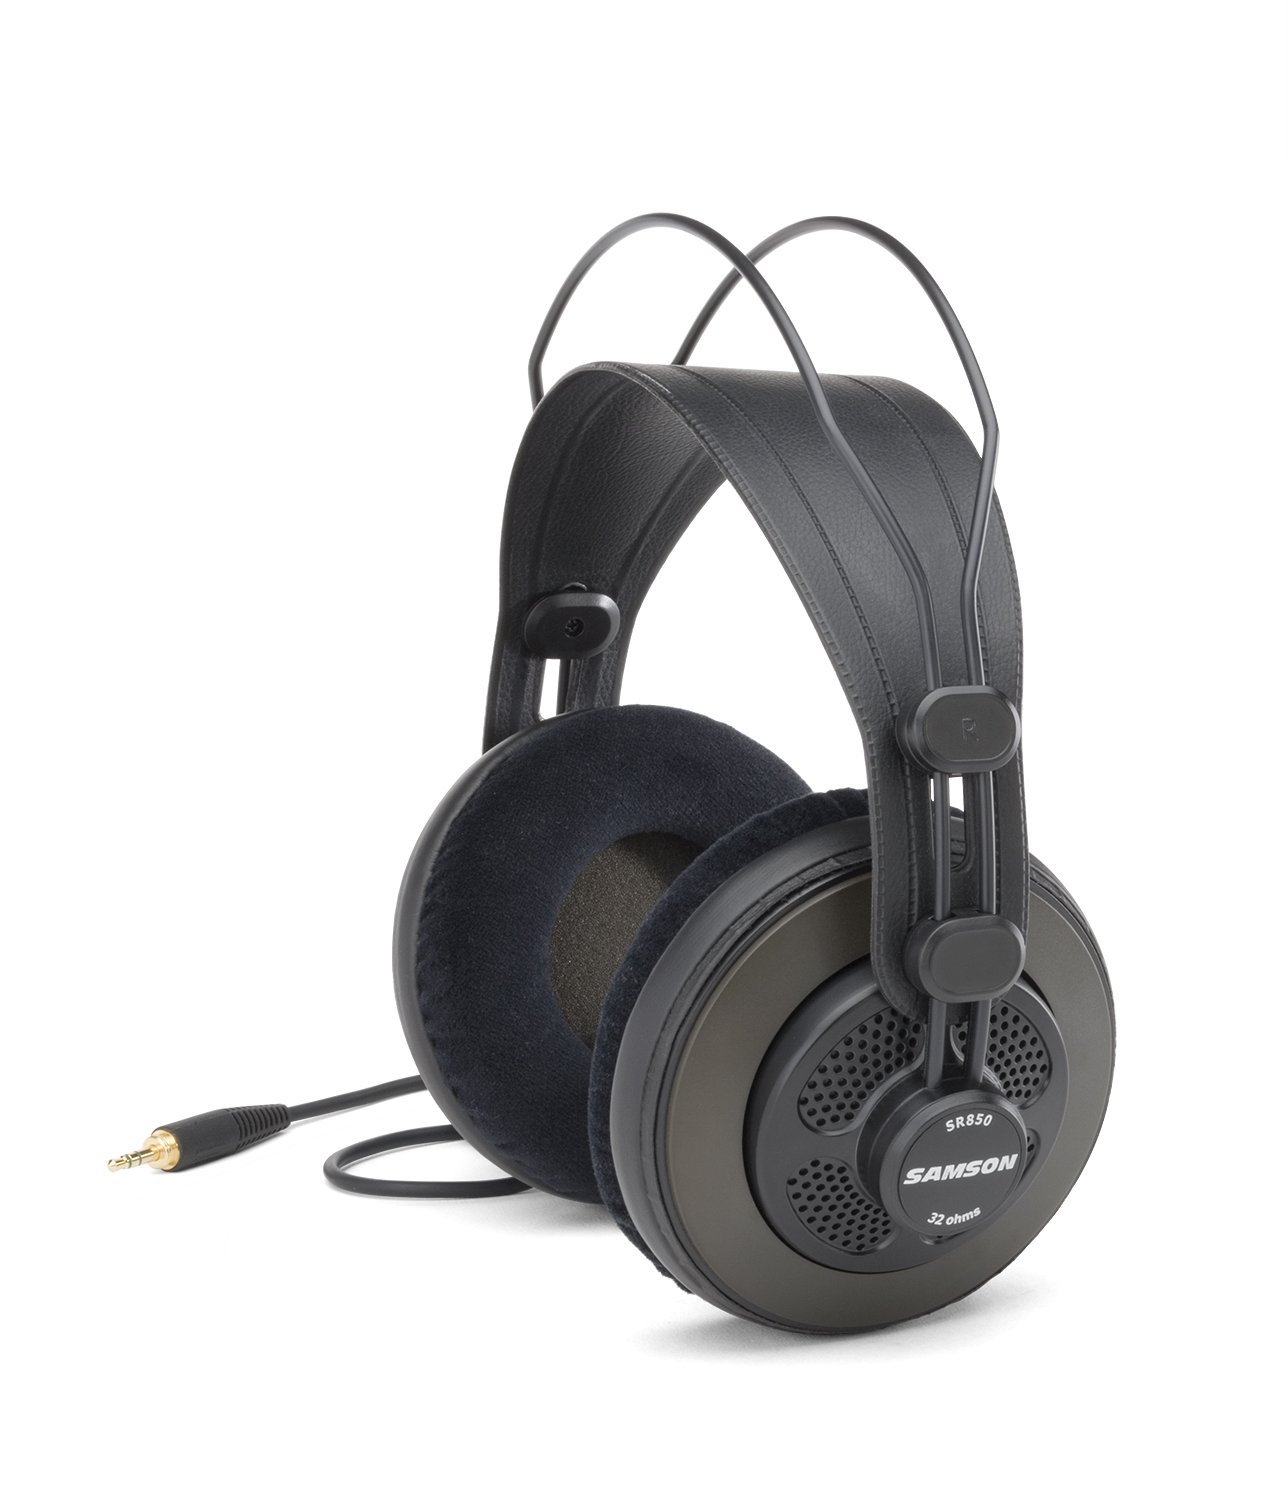 Samson Semi Open-Back Studio Reference Headphones, Black, Over Ear (.)